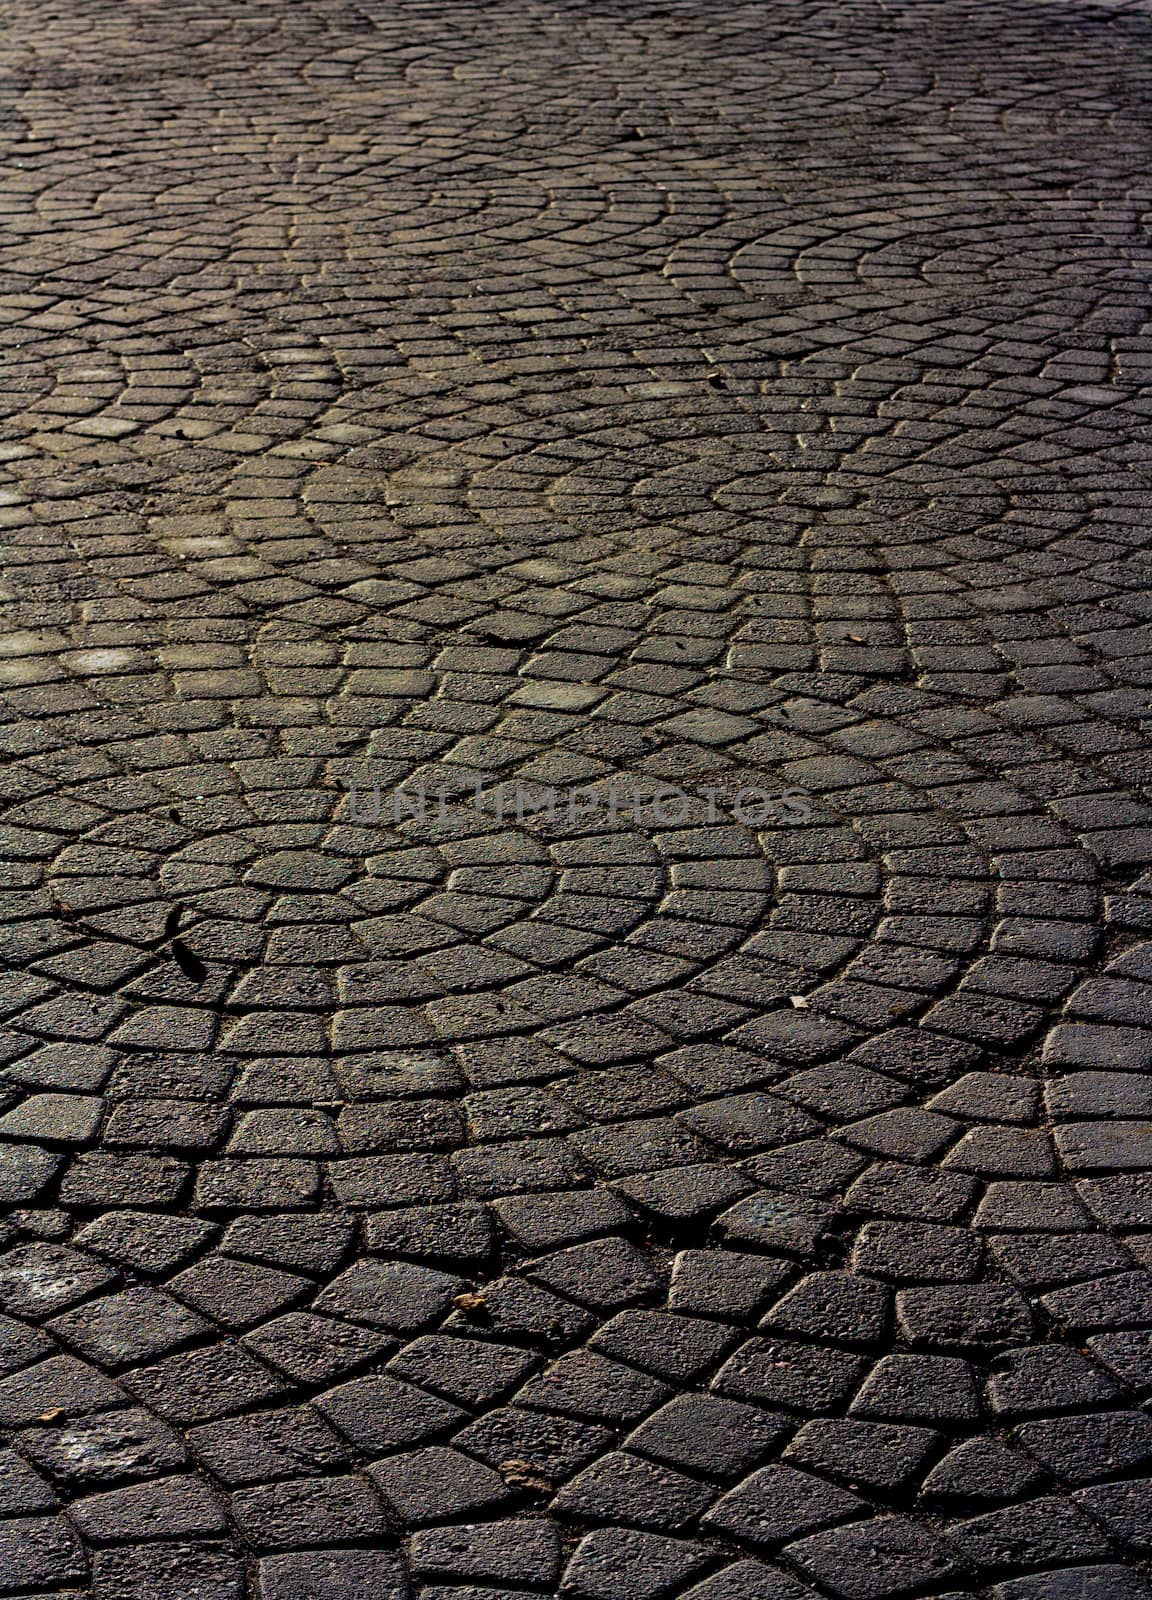 Round pavement rocks going to infinite.